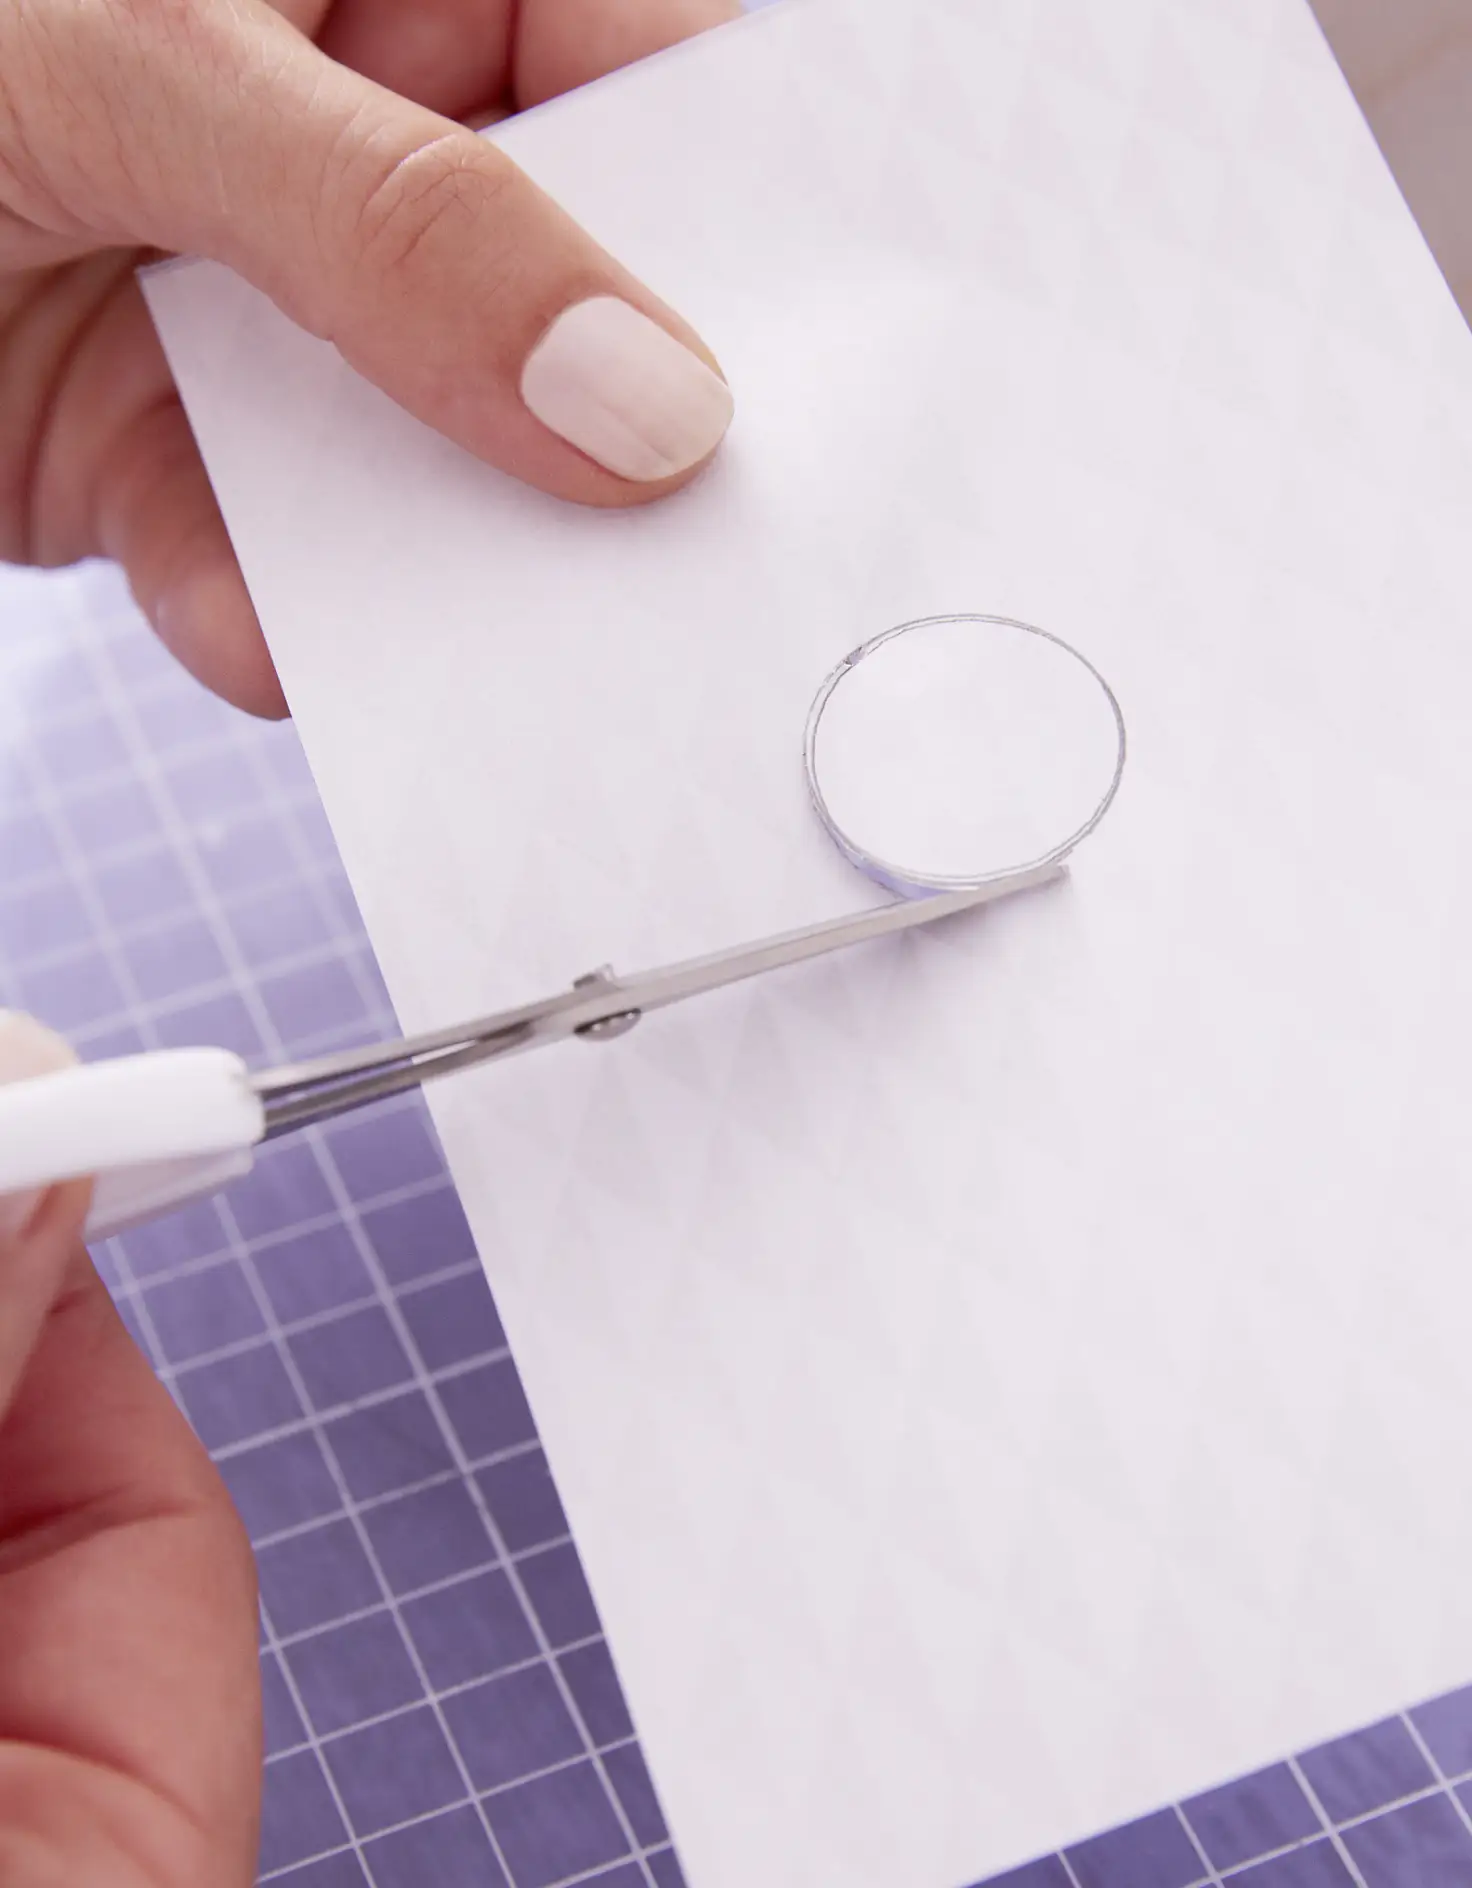 Löcher oder Ausschnitte auf das Papier übertragen und mit einer kleinen Schere ausschneiden.